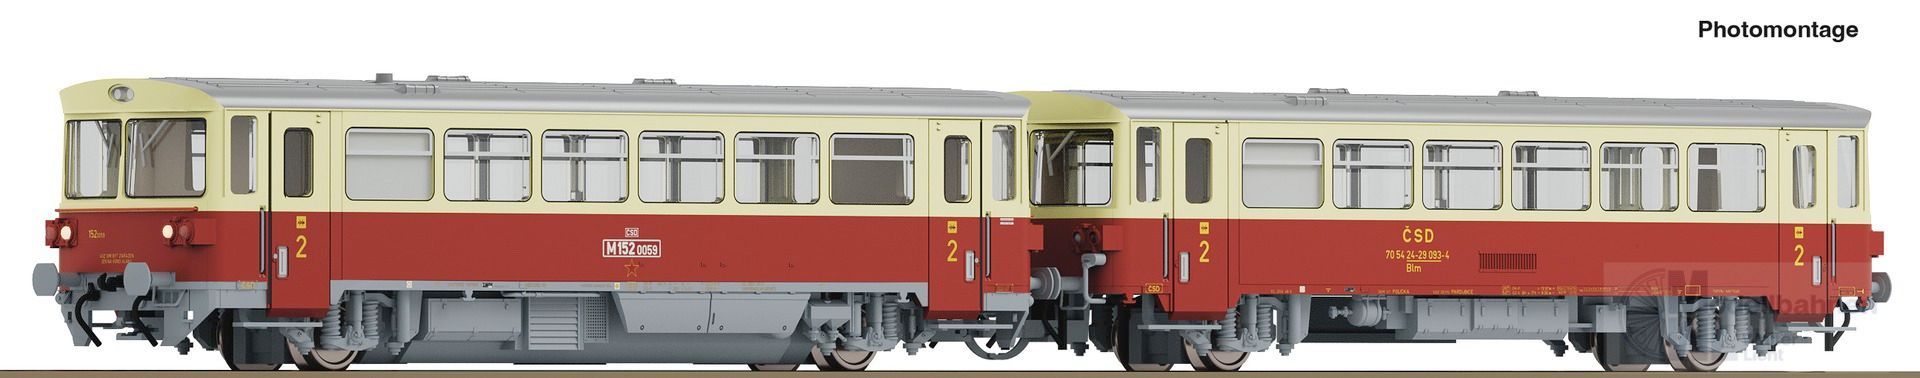 Roco 7780001 - Dieseltriebwagen M152 CSD Ep.IV TT 1:120